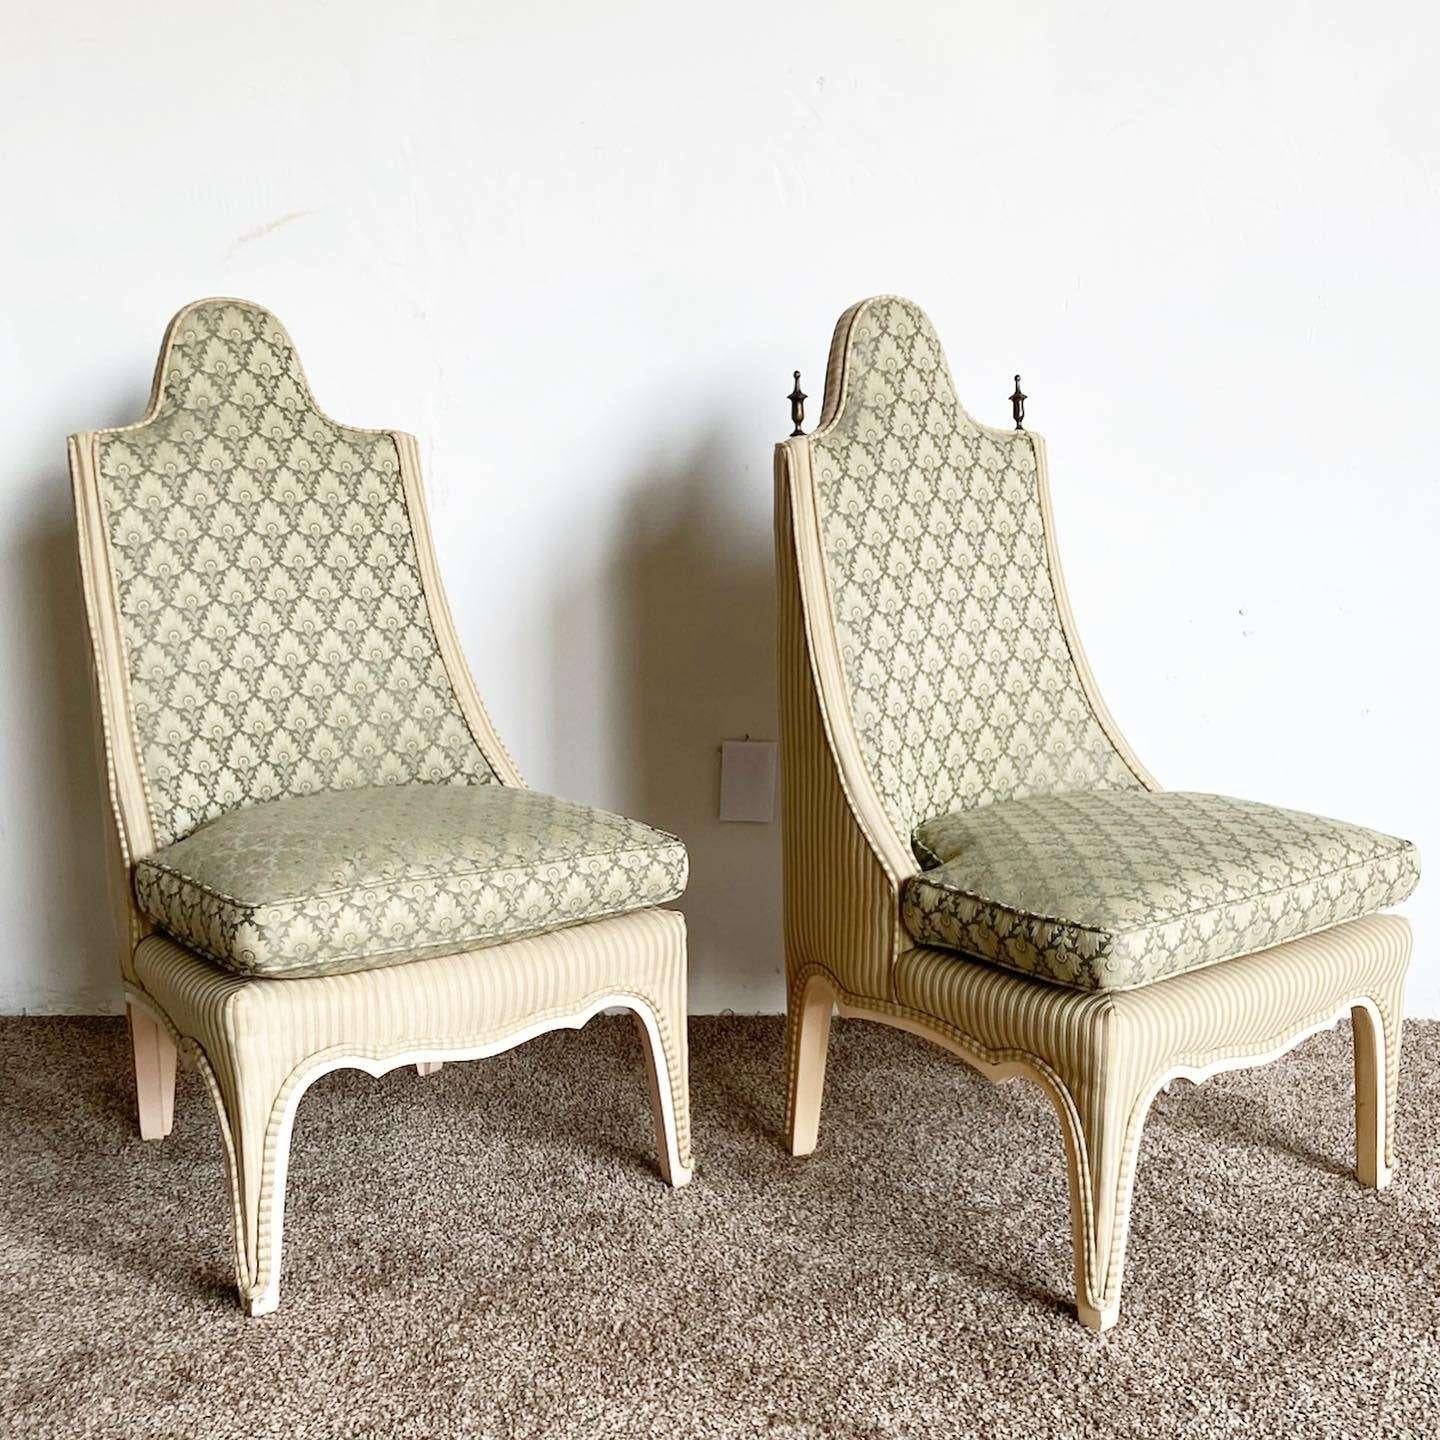 Erstaunlich Vintage Regency Paar Akzent Stühle. Beide sind grün gepolstert und haben einen geformten Rahmen.
